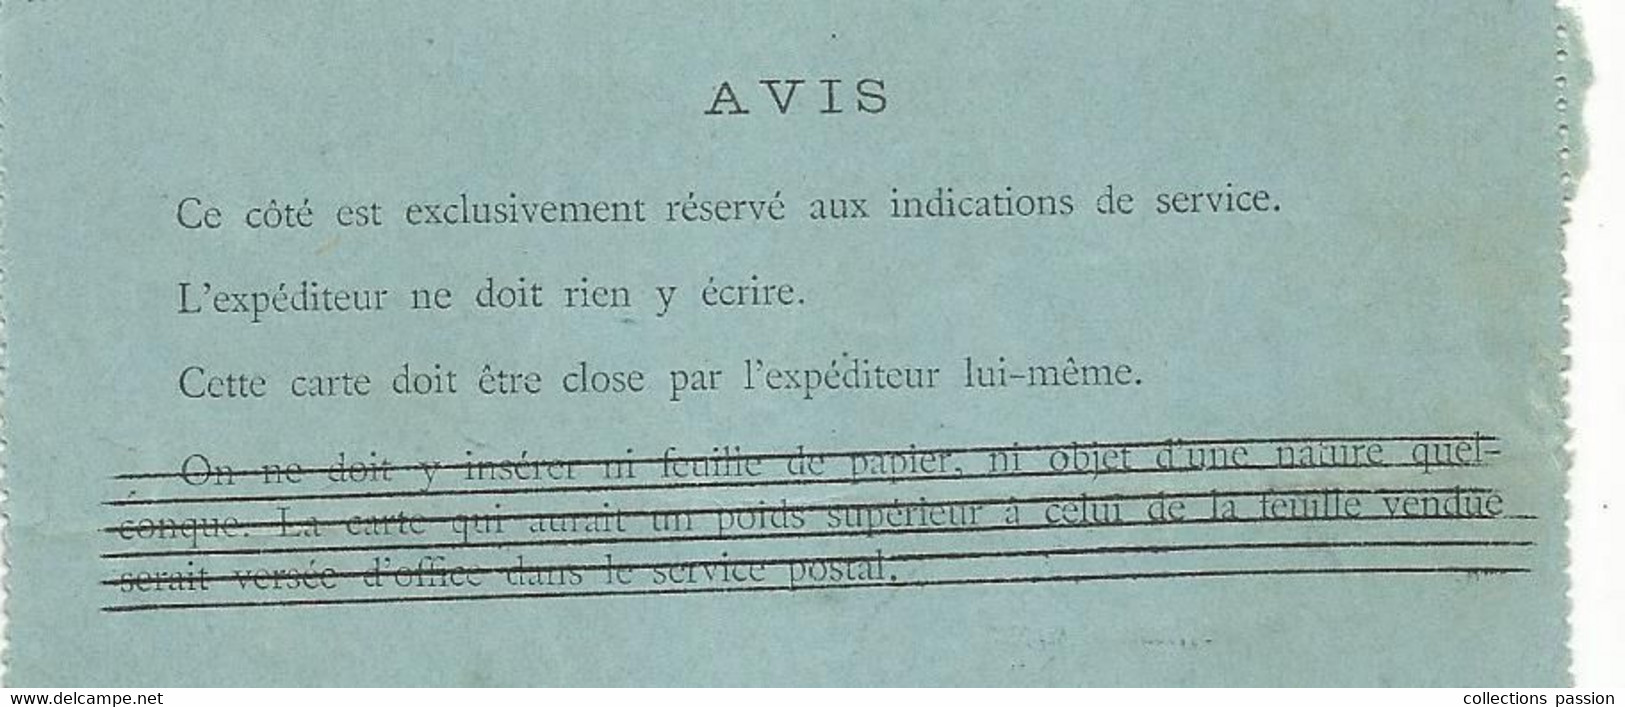 Entier Postal,  Carte Pneumatique Fermée , PARIS ,1898 - Pneumatiques